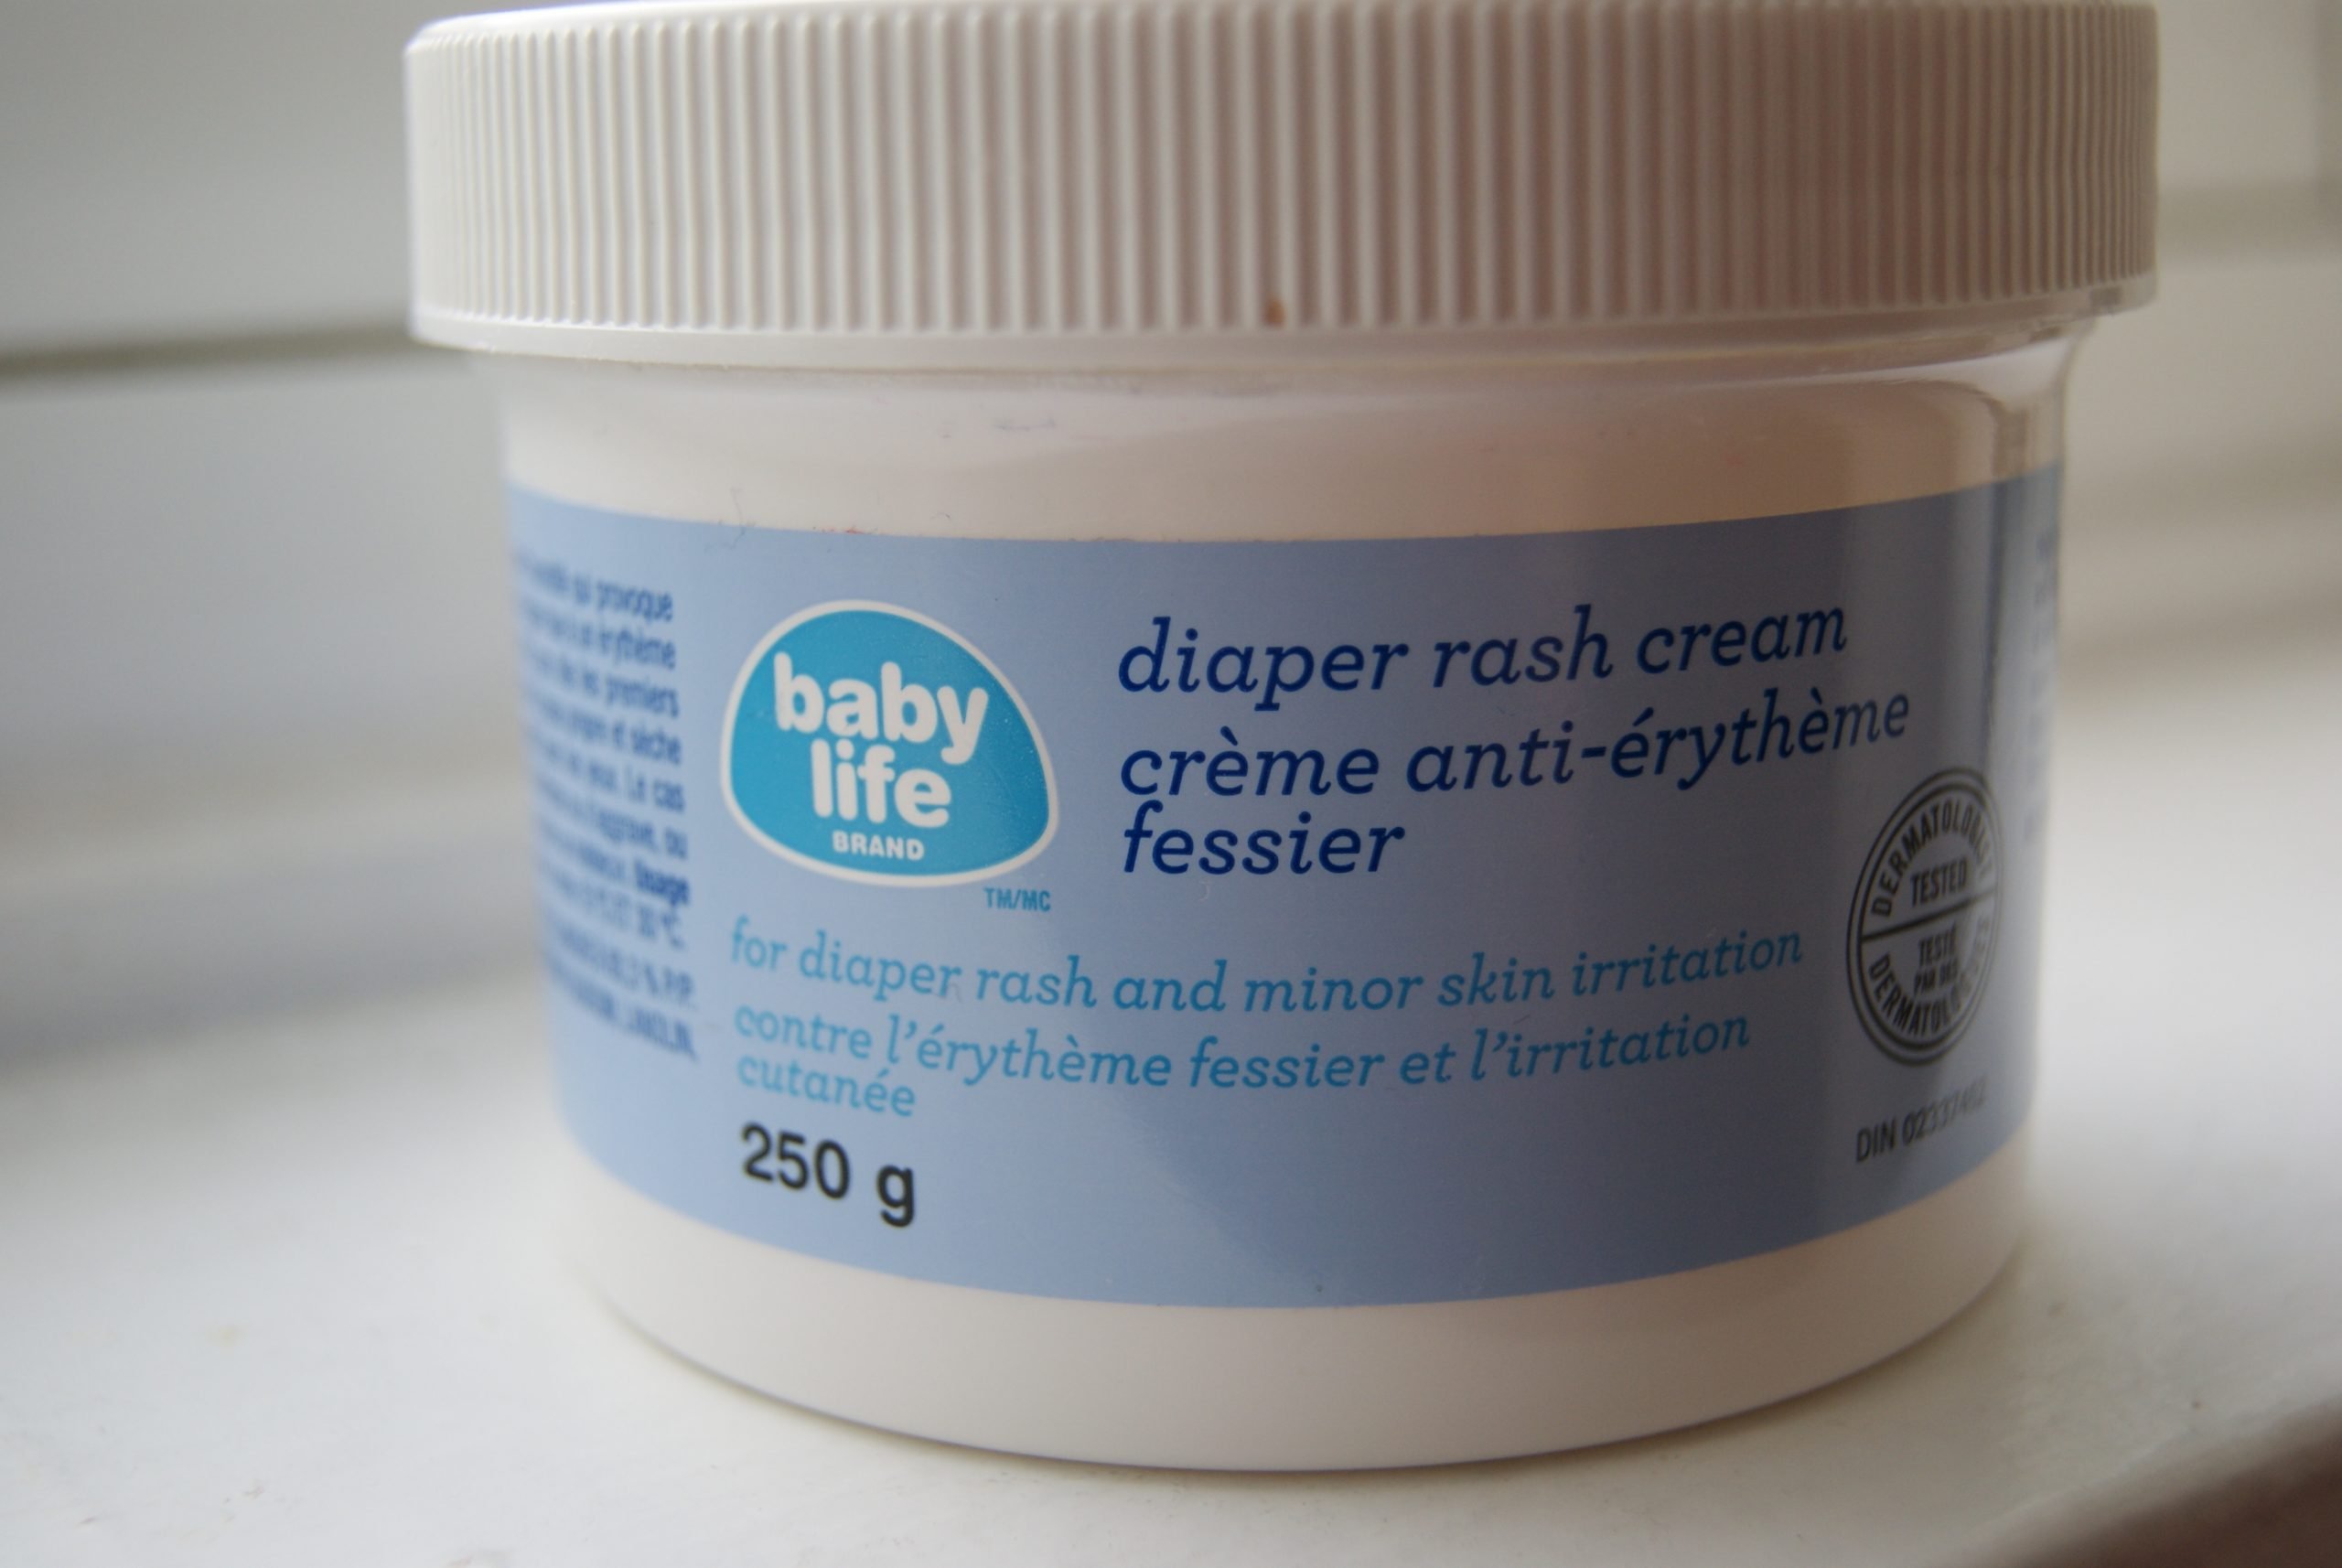 Baby Life: Diaper Rash Cream reviews in Diaper Creams ...